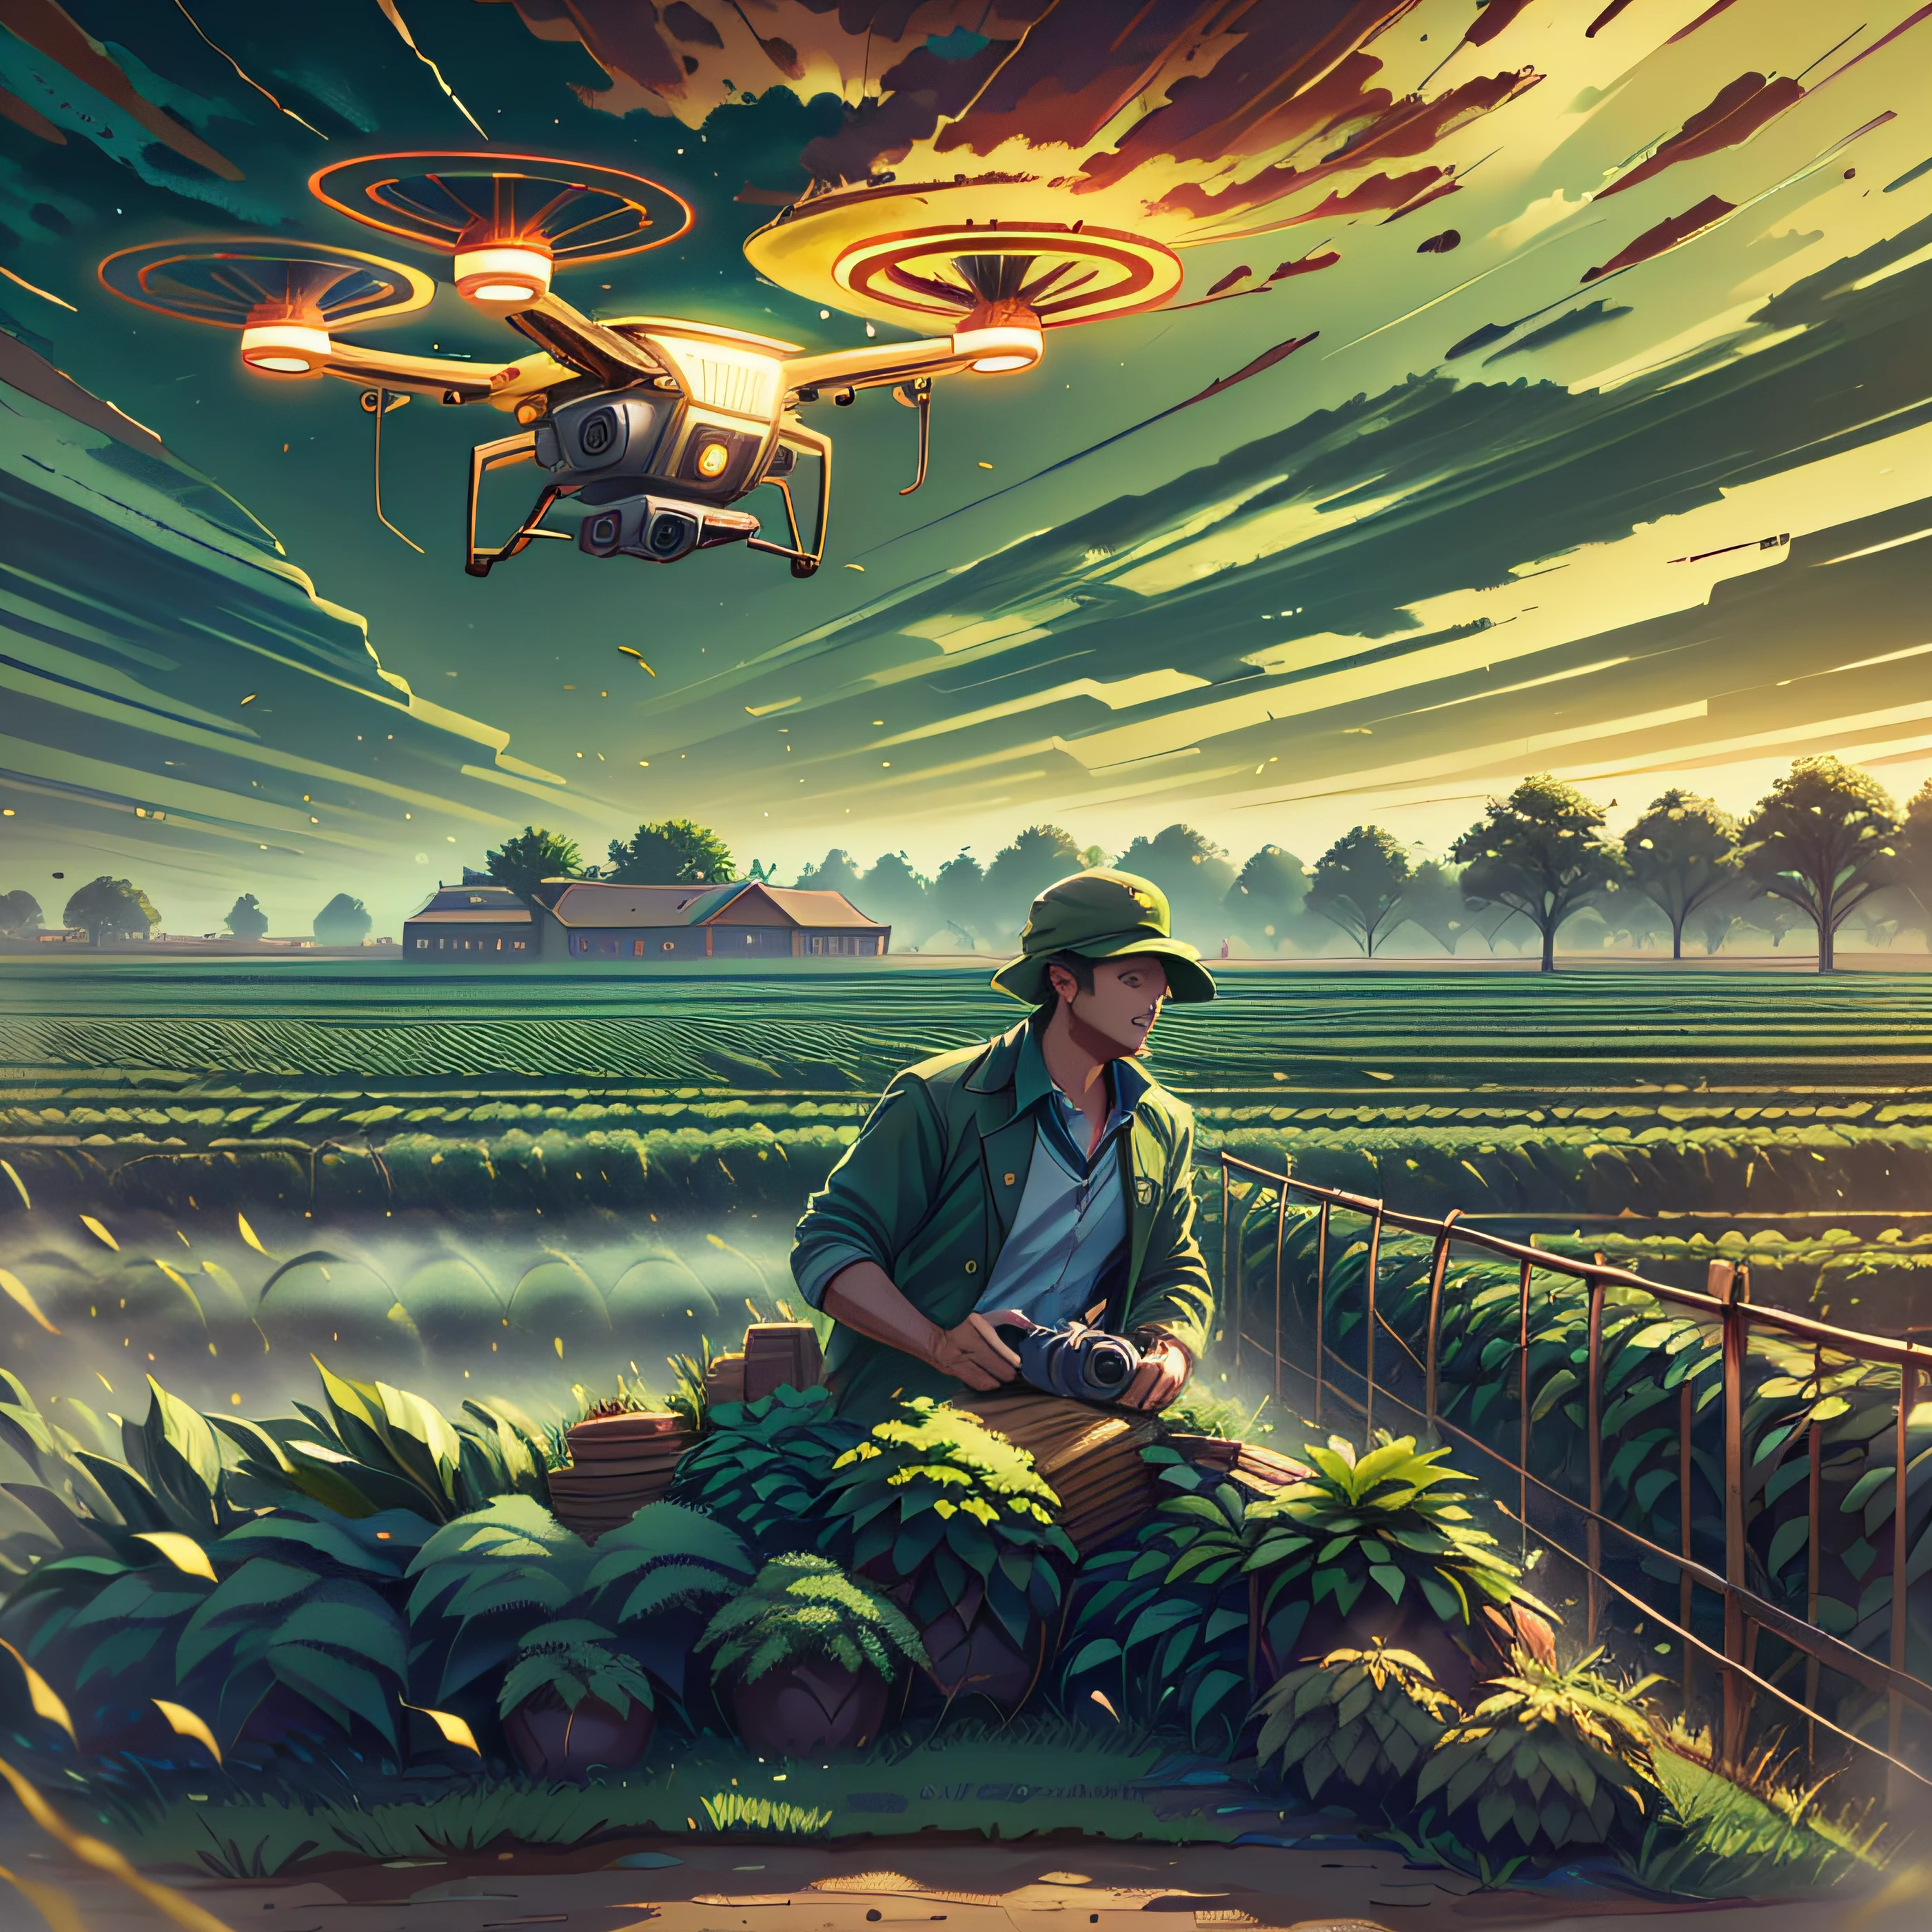 Представьте себе действующую современную ферму., Освещенный заходящим солнцем. в центре изображения, прочный, опытный фермер, одет в рабочую одежду, смотрит, наблюдаю за парящим в небе высокотехнологичным дроном. Дрон, сияющий в солнечном свете, оснащен камерами и датчиками, представляющий собой сплав сельского хозяйства и технологий. Окружающая ферма зеленая и плодородная, с рядами плантаций, уходящих до горизонта. Используйте зеркальную камеру высокого разрешения., например, Canon EOS 5D Mark IV, с объективом 50 мм, чтобы запечатлеть эту сцену во всех деталях. Освещение должно быть естественным, заходящее солнце освещает сцену золотым сиянием. Цвета должны быть насыщенными и насыщенными., с яркой зеленью плантаций и ясным голубым небом. Композиция должна быть сбалансированной., с фермером и дроном в центре, и огромная ферма, простирающаяся вокруг них. --воздух 16:9 -- в 5.1 --Стиль необработанный --Q 2 --S 750